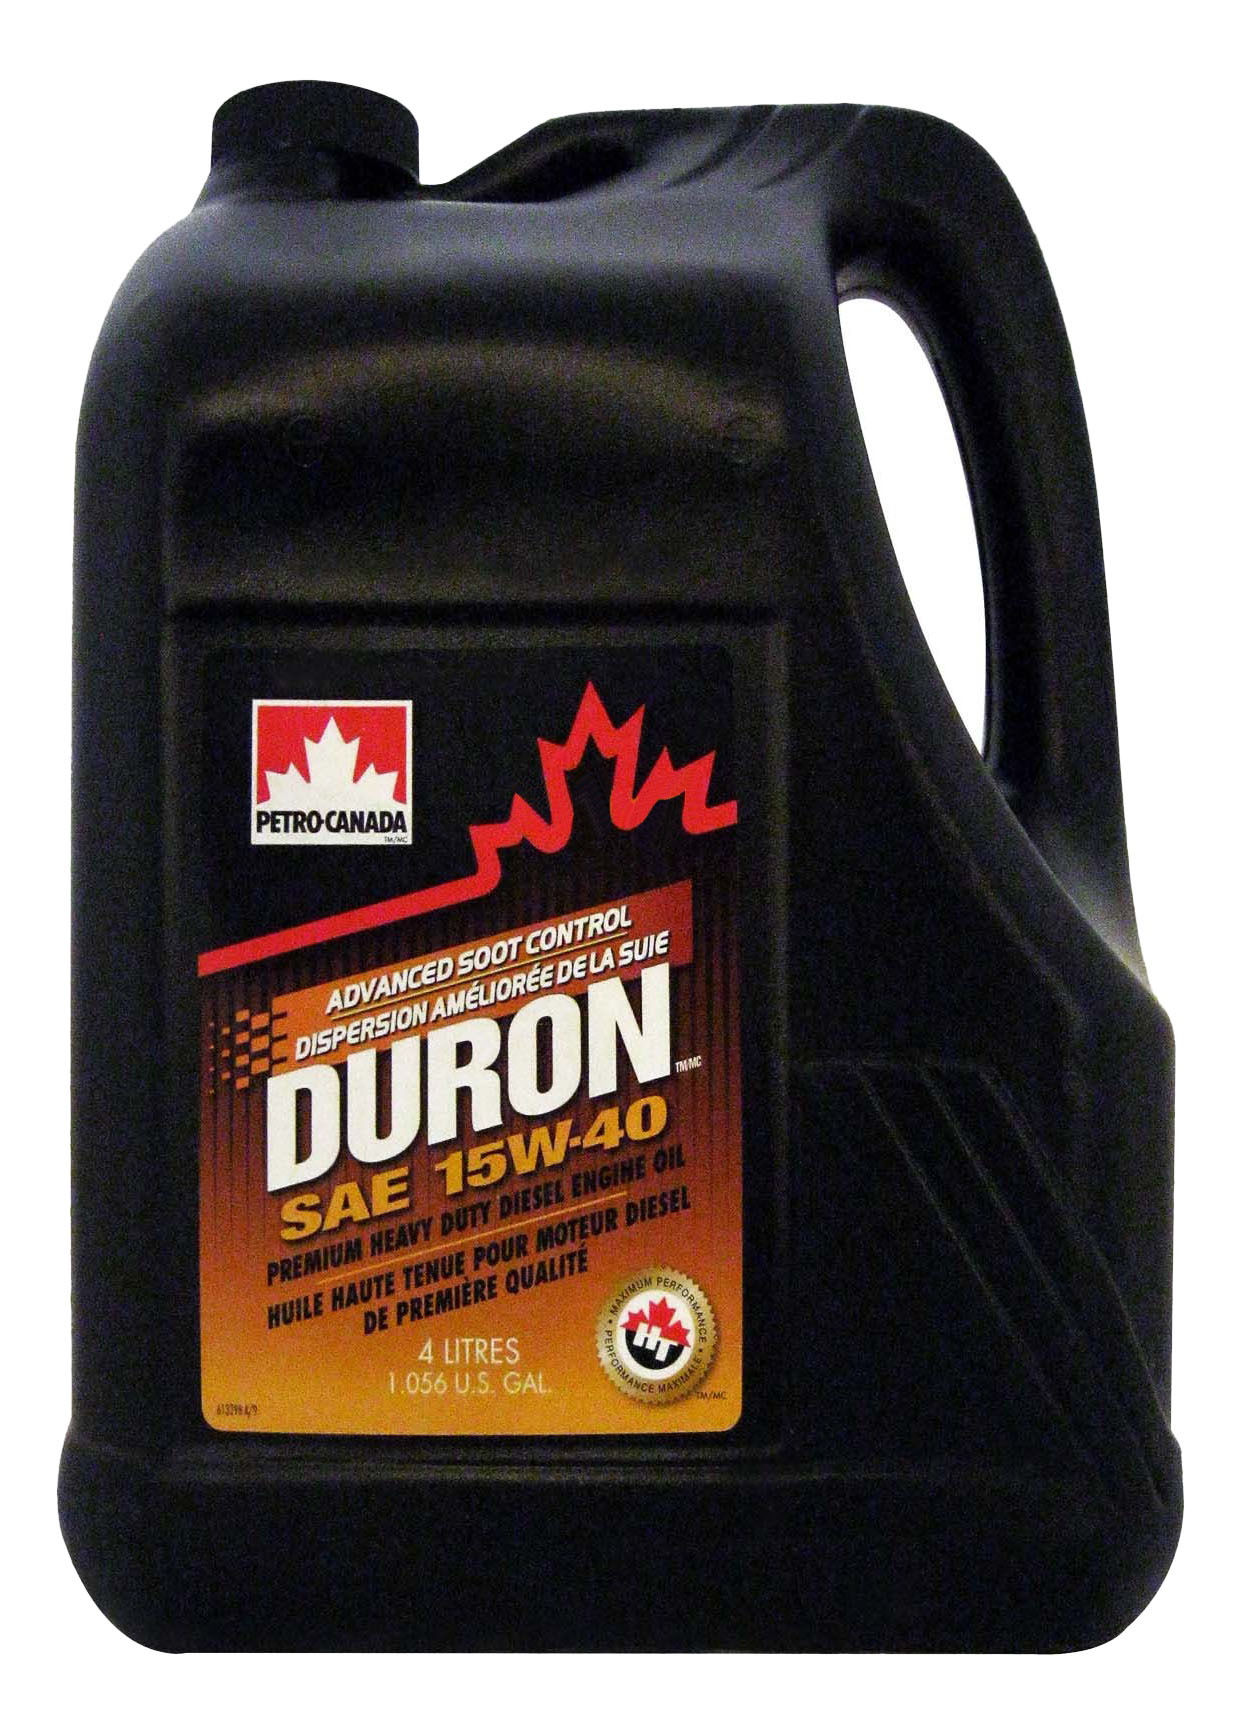 Duron Petro-Canada DUR15C16